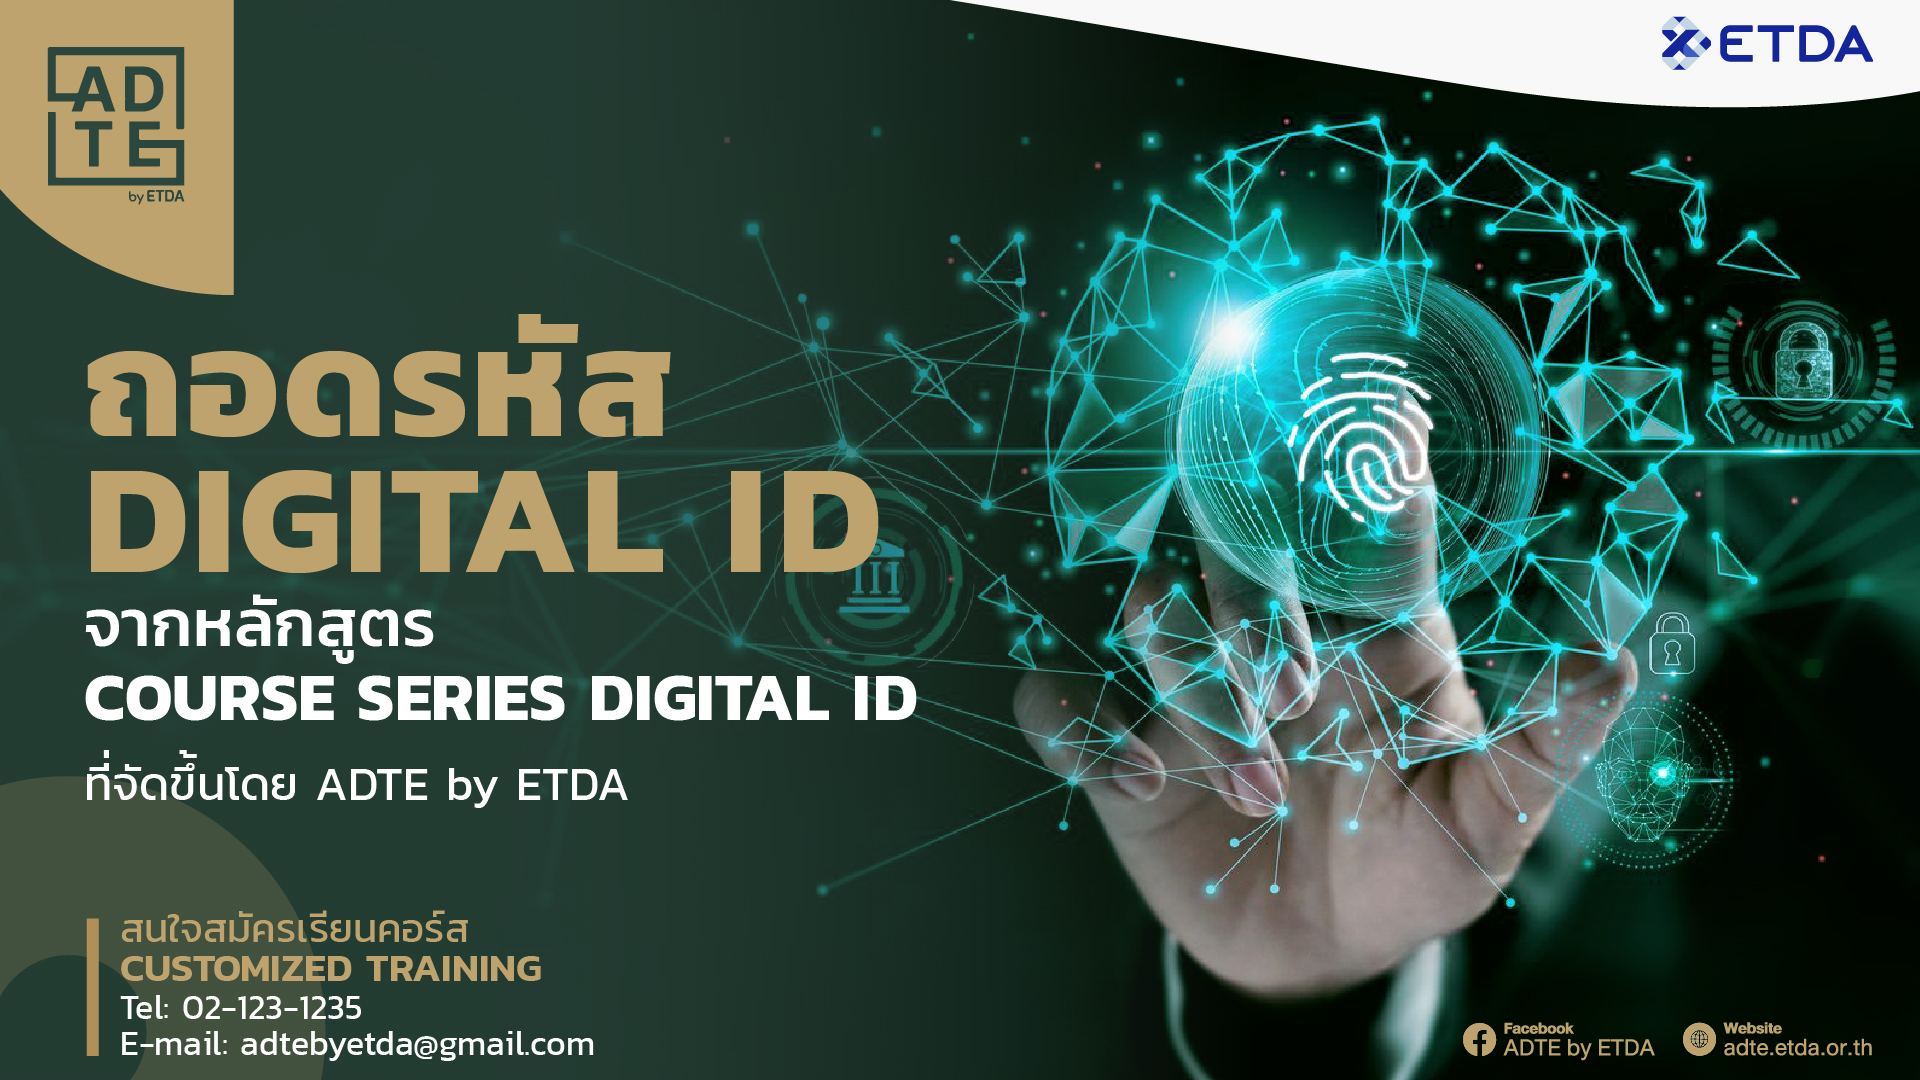 ถอดรหัส Digital ID จากหลักสูตร Course Series DIGITAL ID ที่จัดขึ้นโดย ADTE by ETDA